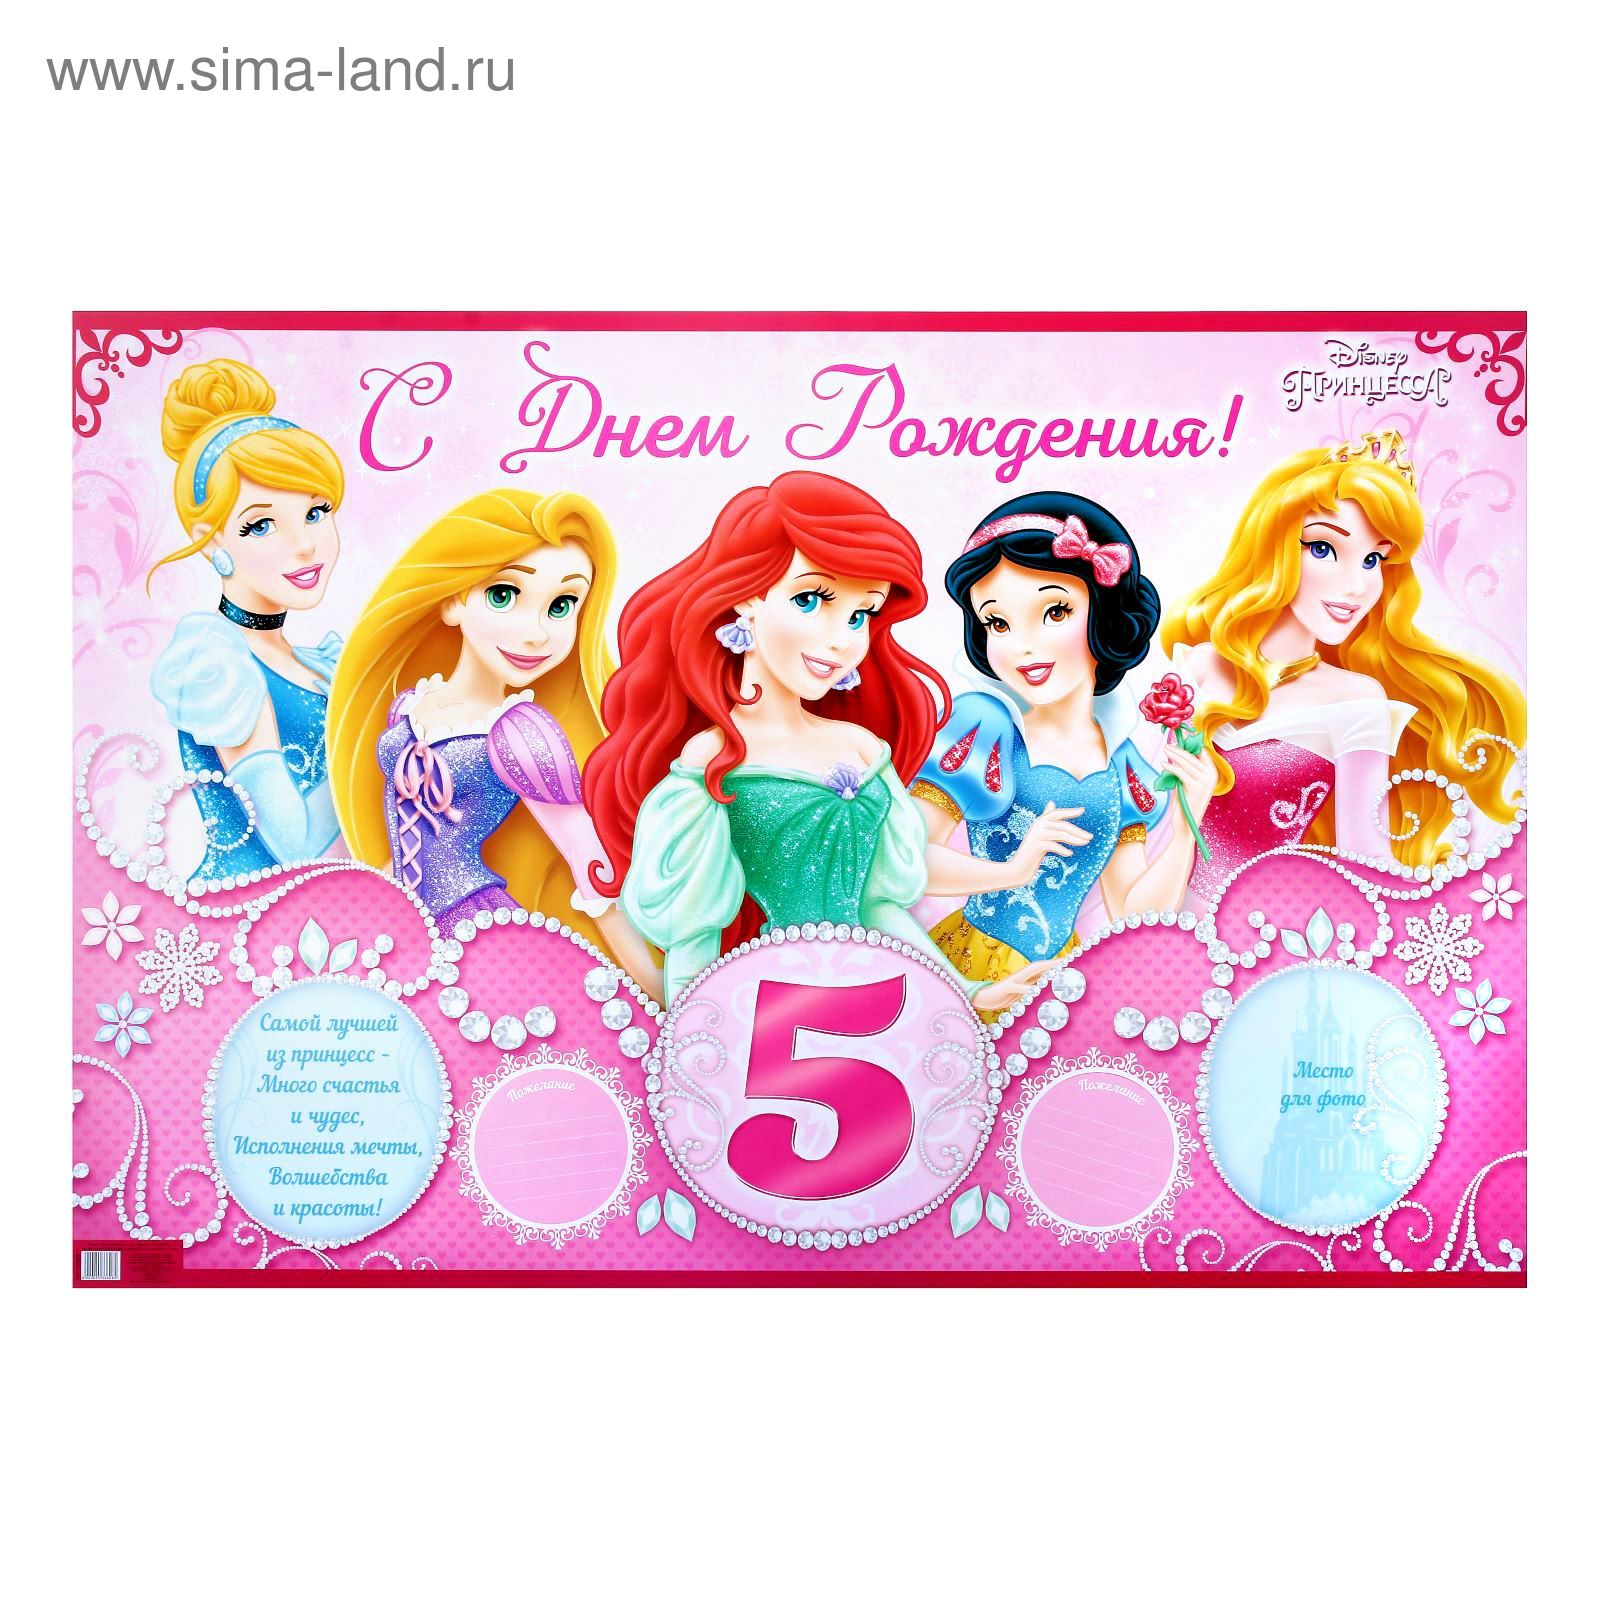 Игры на день рождение 10 лет девочке. С днём рождения 5 лет девочке. Плакат с днем рождения 5 лет. День рождения принцессы. С днем рождения принцесса 5 лет.